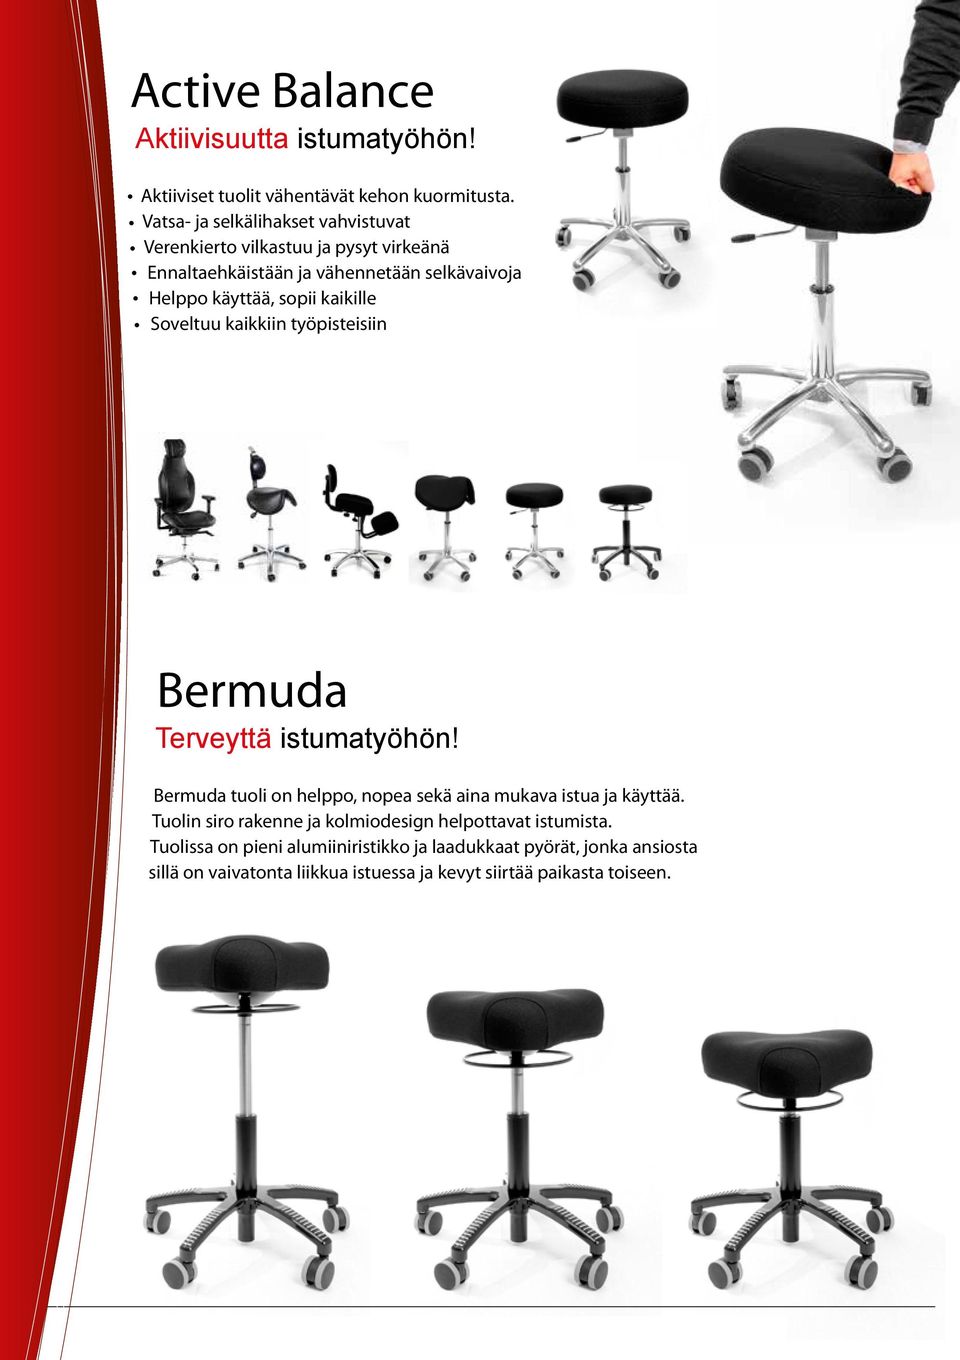 Soveltuu kaikkiin työpisteisiin Bermuda Terveyttä istumatyöhön! Bermuda tuoli on helppo, nopea sekä aina mukava istua ja käyttää.